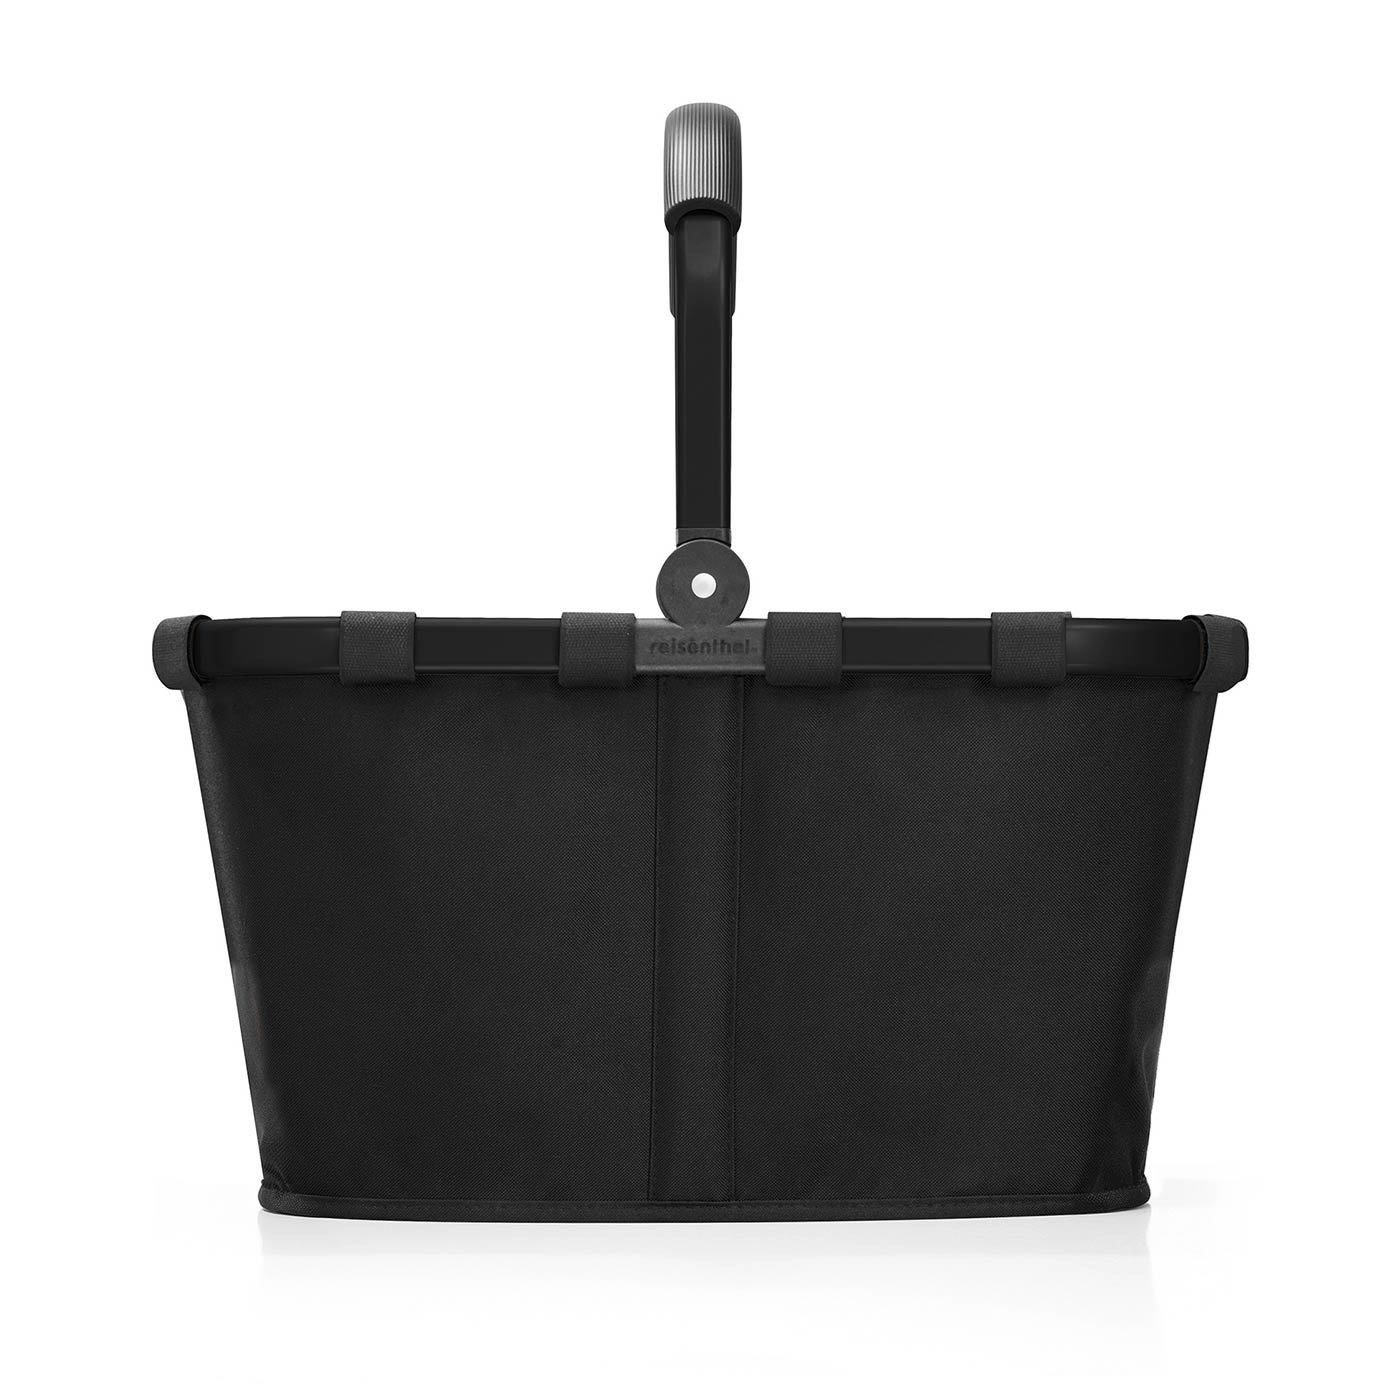 Nákupní košík Carrybag frame black / black_0